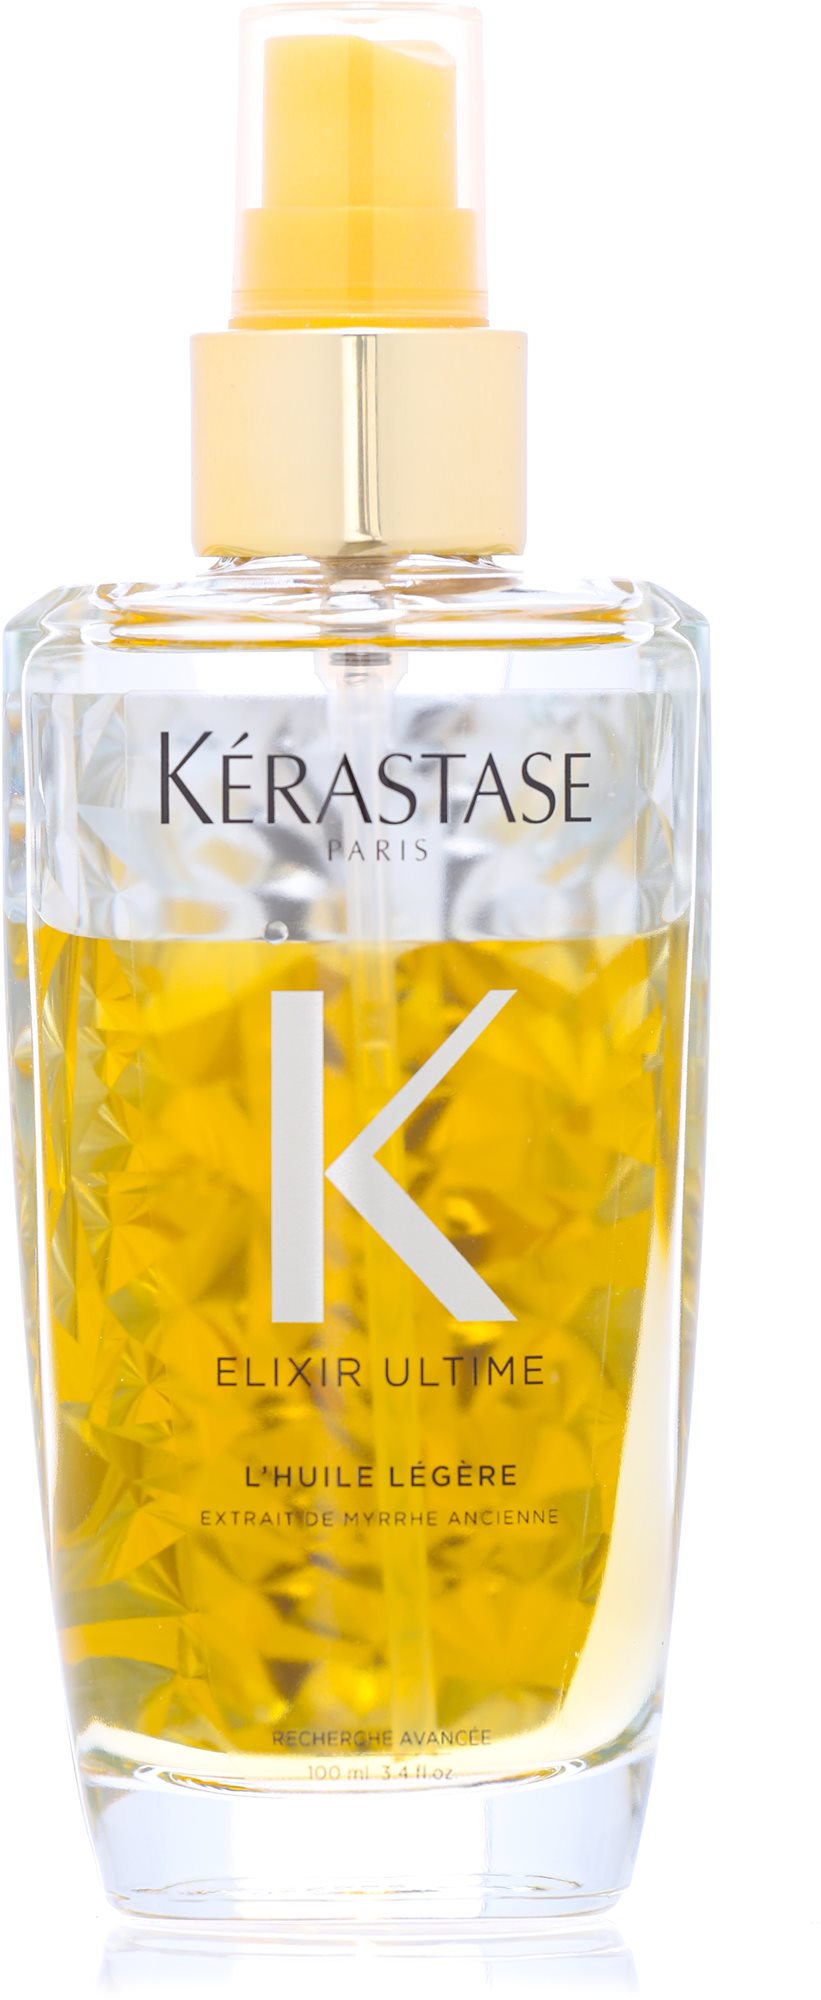 Hajolaj KÉRASTASE Elixir Ultime Oillspray Elixir Ultime (fine hair) 100 ml